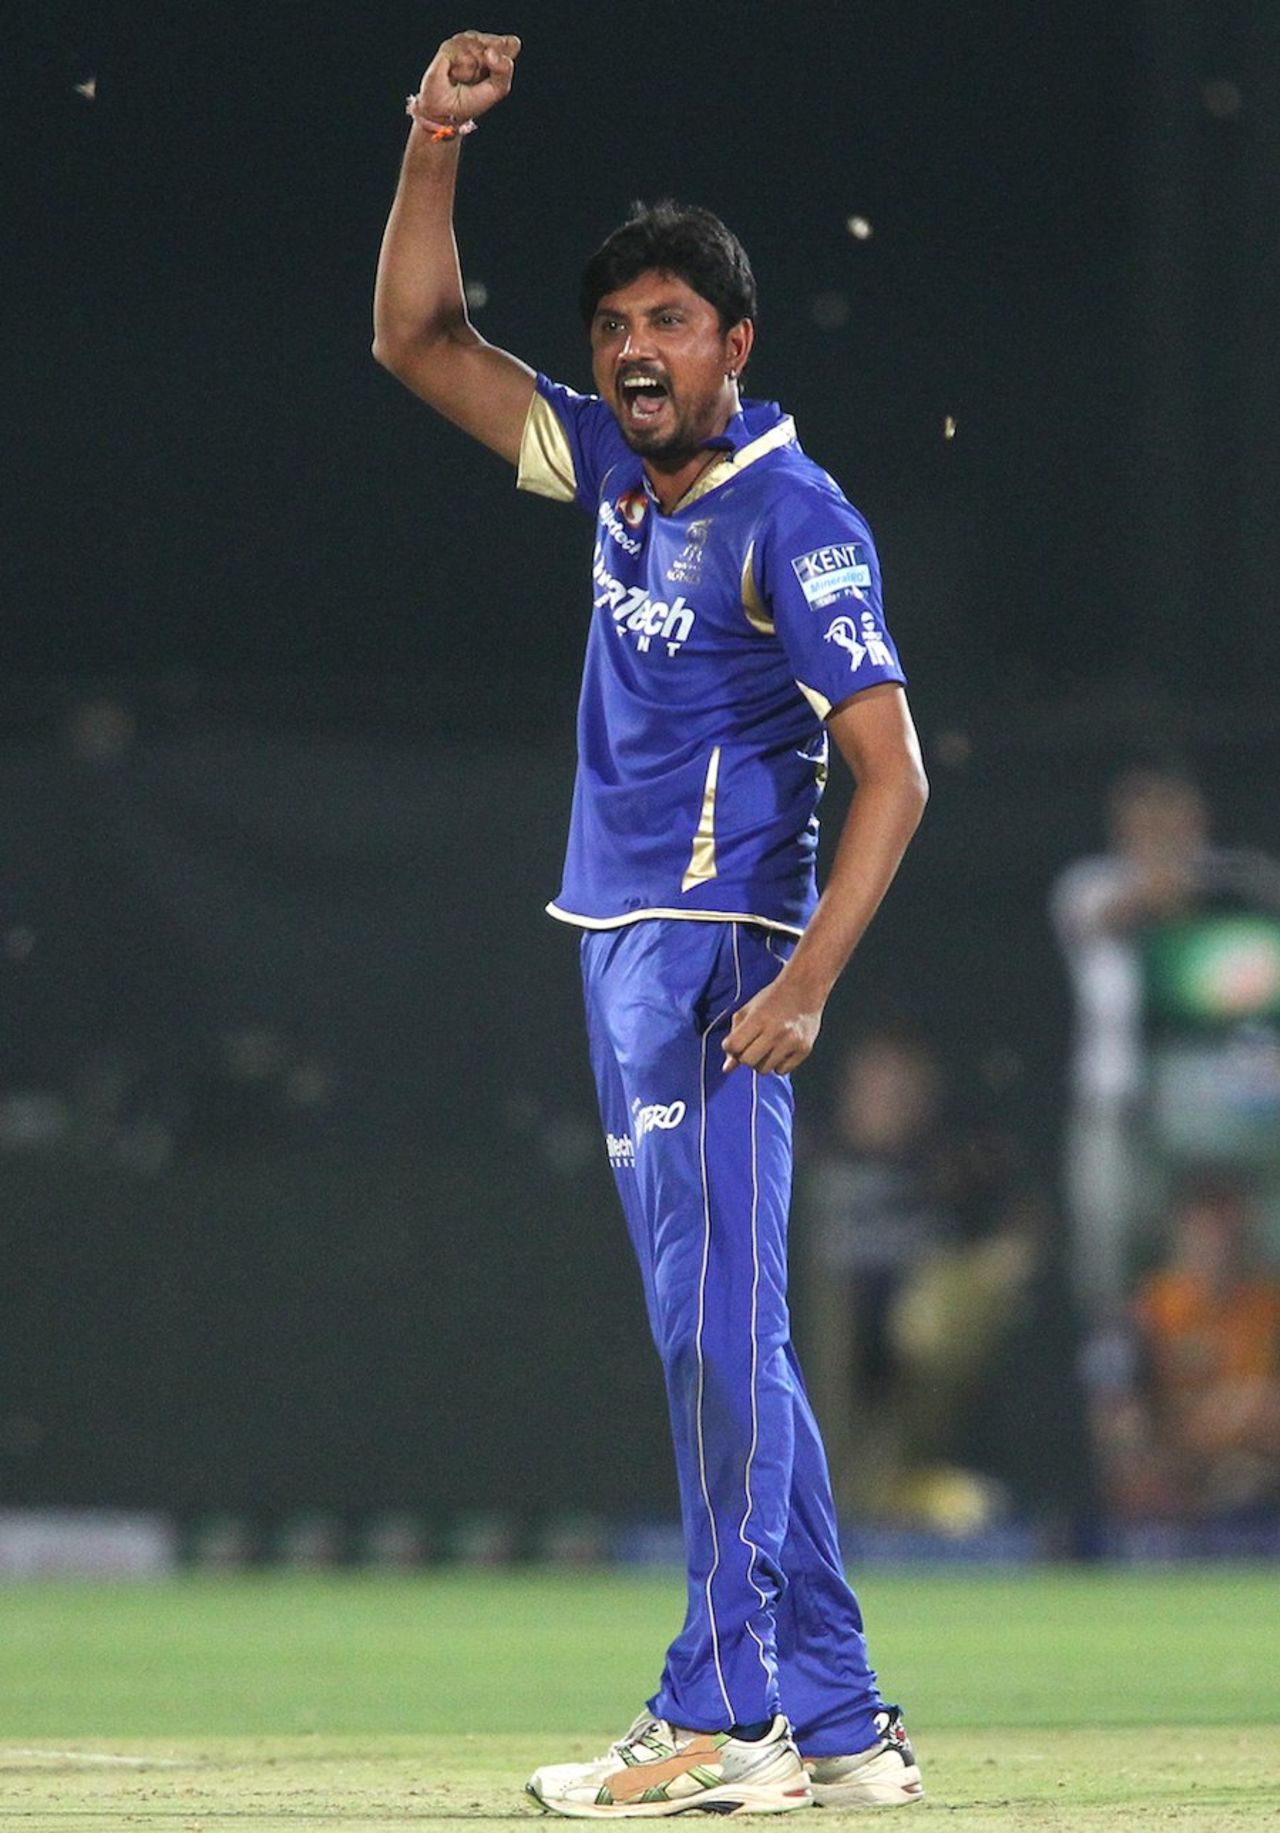 Siddharth Trivedi claimed 3 for 23, Rajasthan v Kolkata, IPL 2013, Jaipur, April 8, 2013